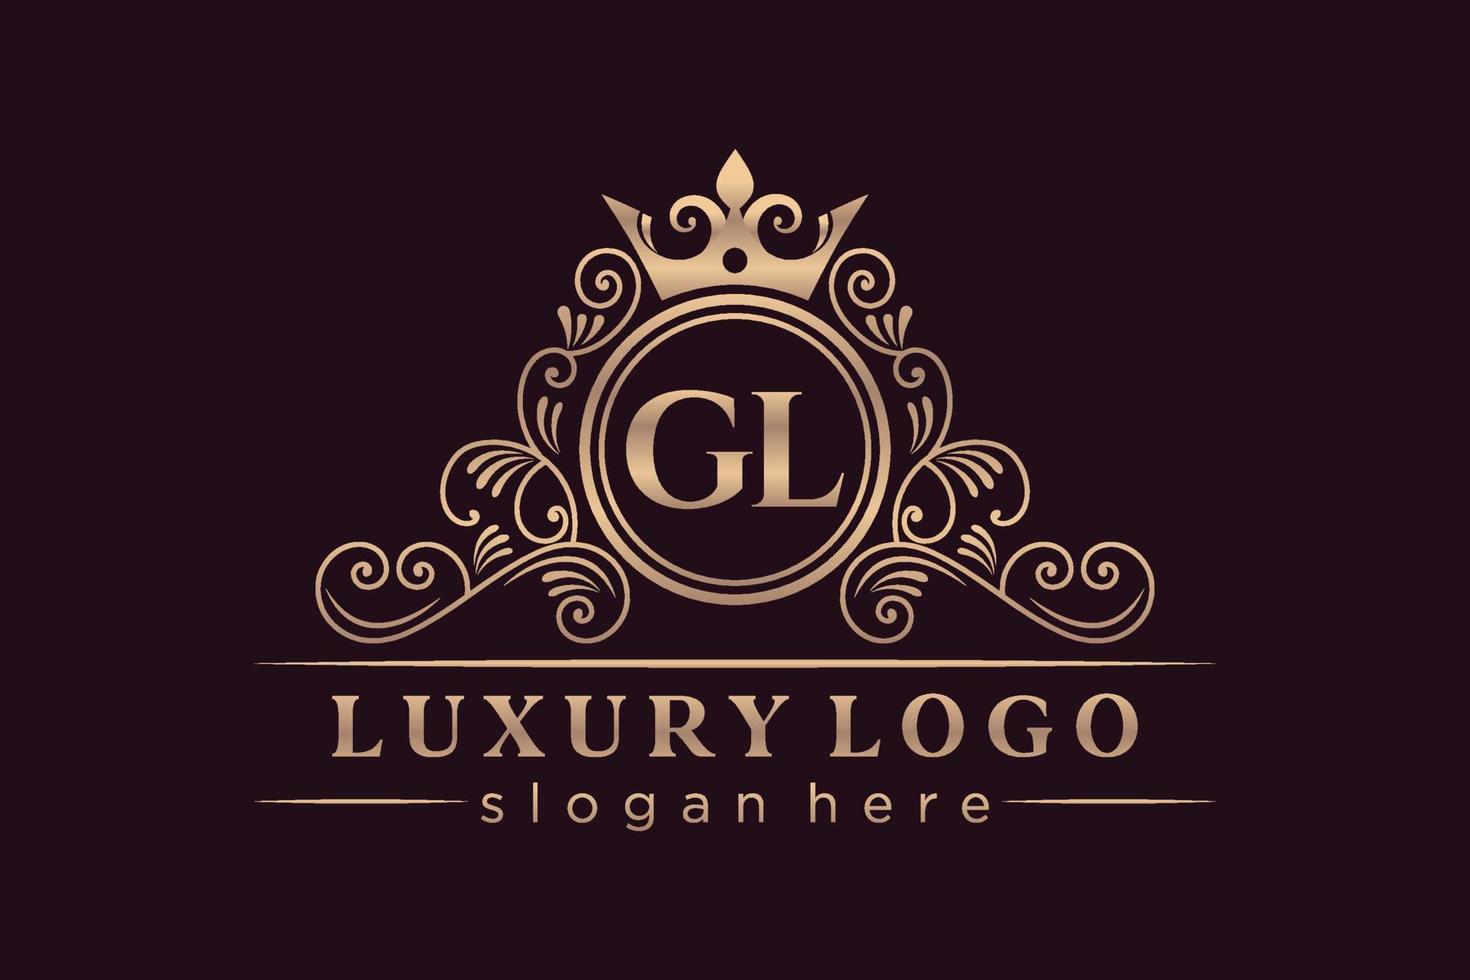 gl letra inicial ouro caligráfico feminino floral mão desenhada monograma heráldico antigo estilo vintage design de logotipo de luxo vetor premium